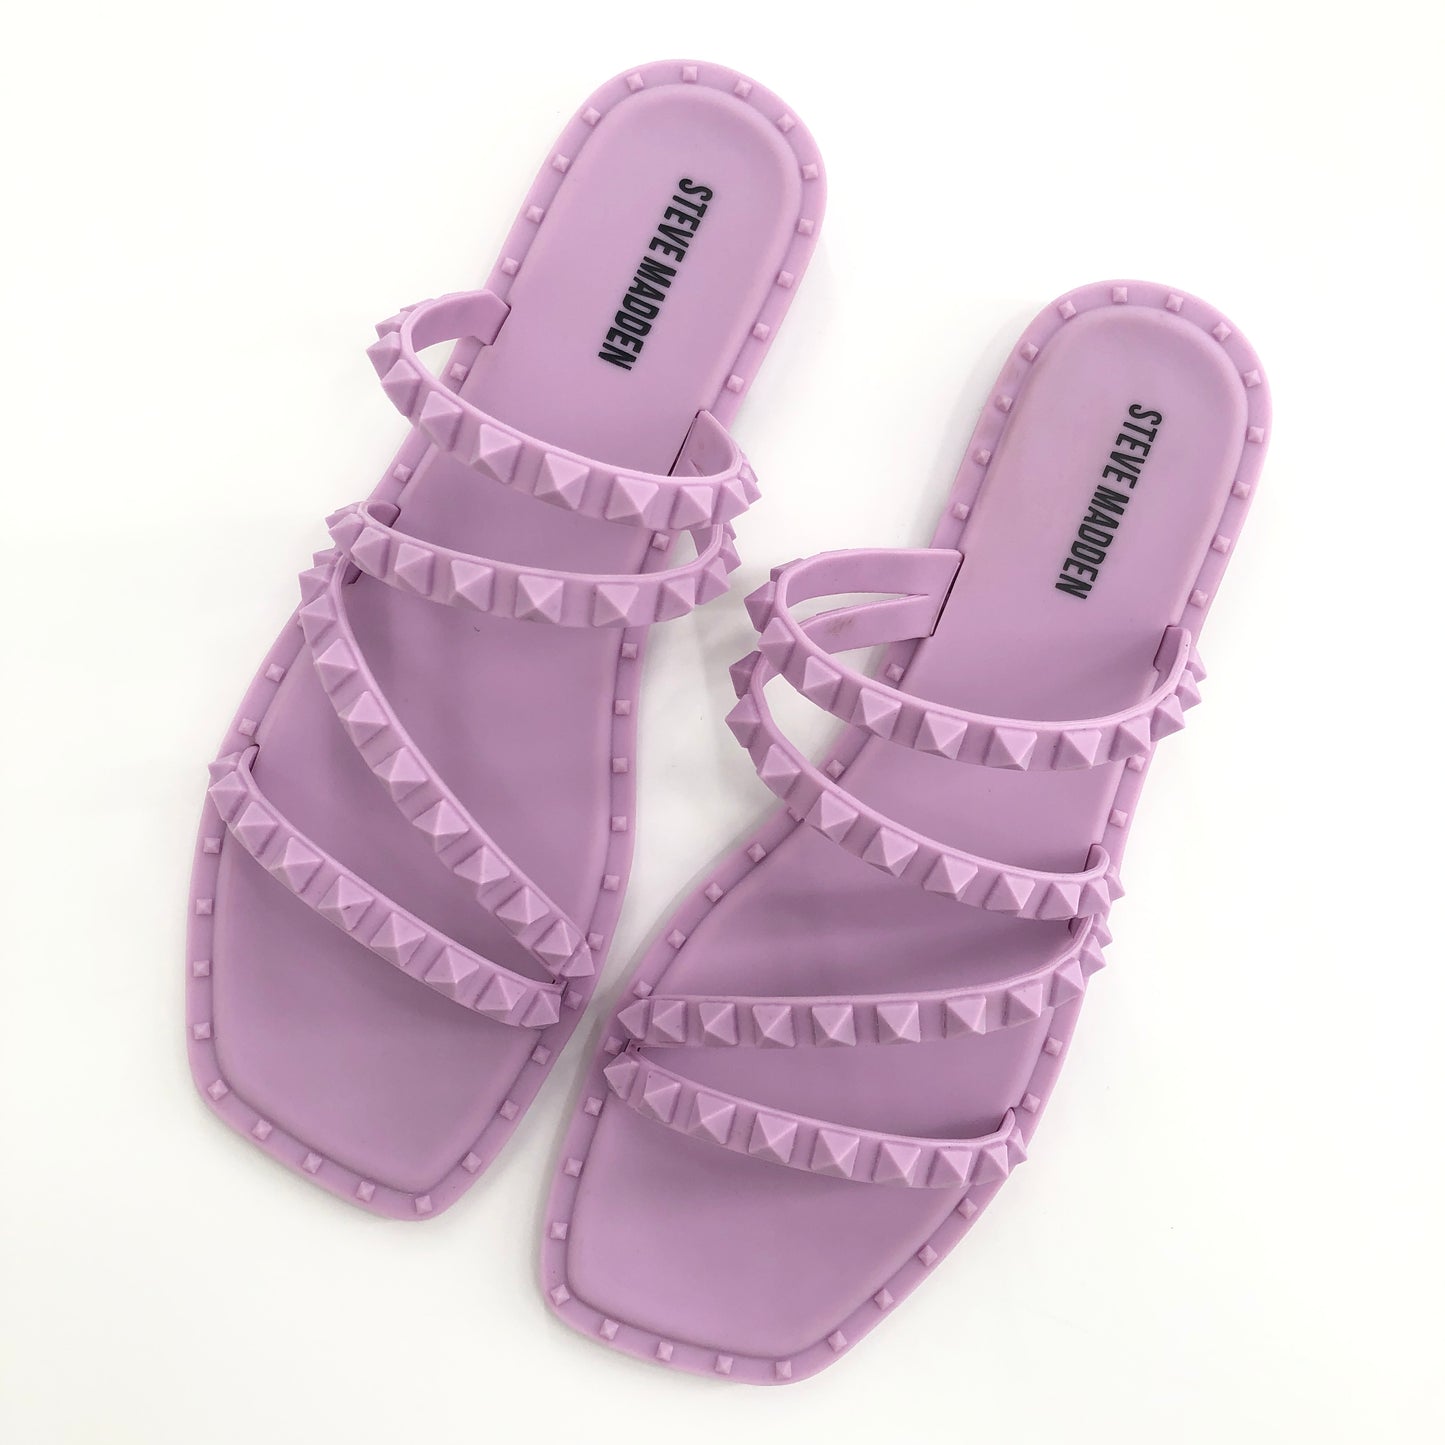 Steven Madden Skyler-J Studded Jelly Slide Sandals Lilac 8